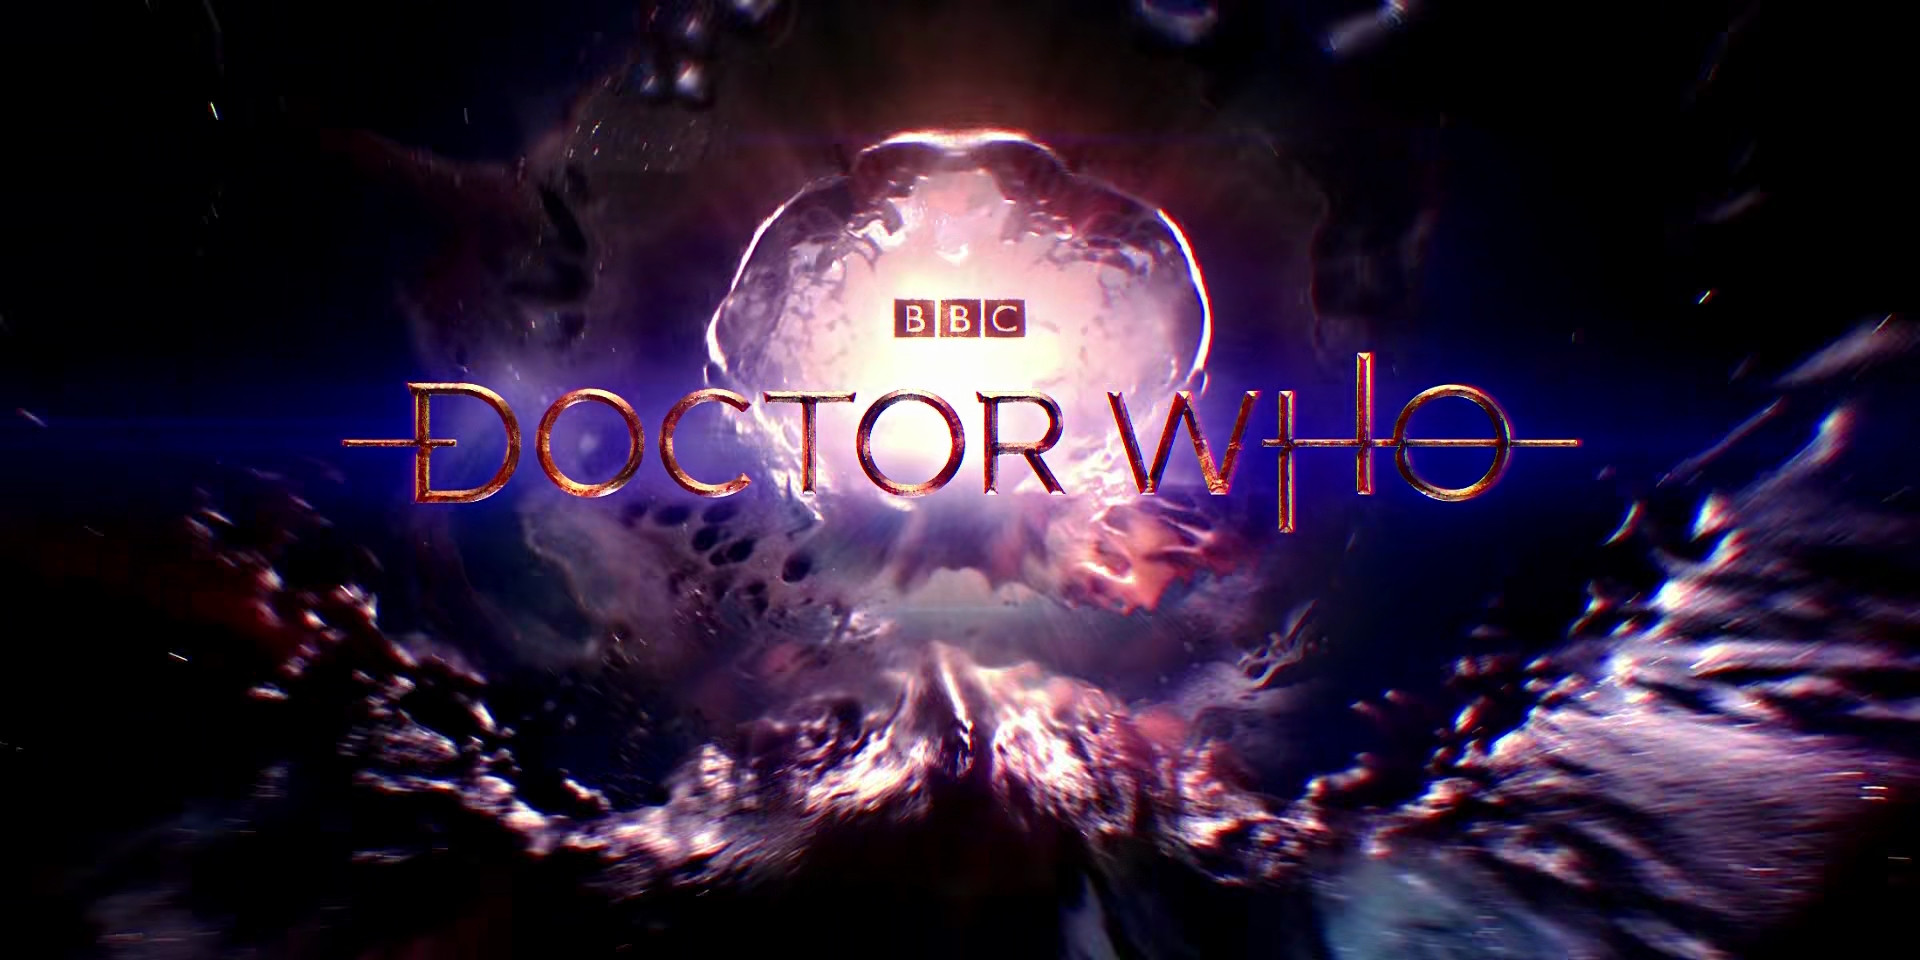 Dr Who Season 11 2005 BBC 1080p BluRay MKV x265 AC3 Web DL 5 63GB